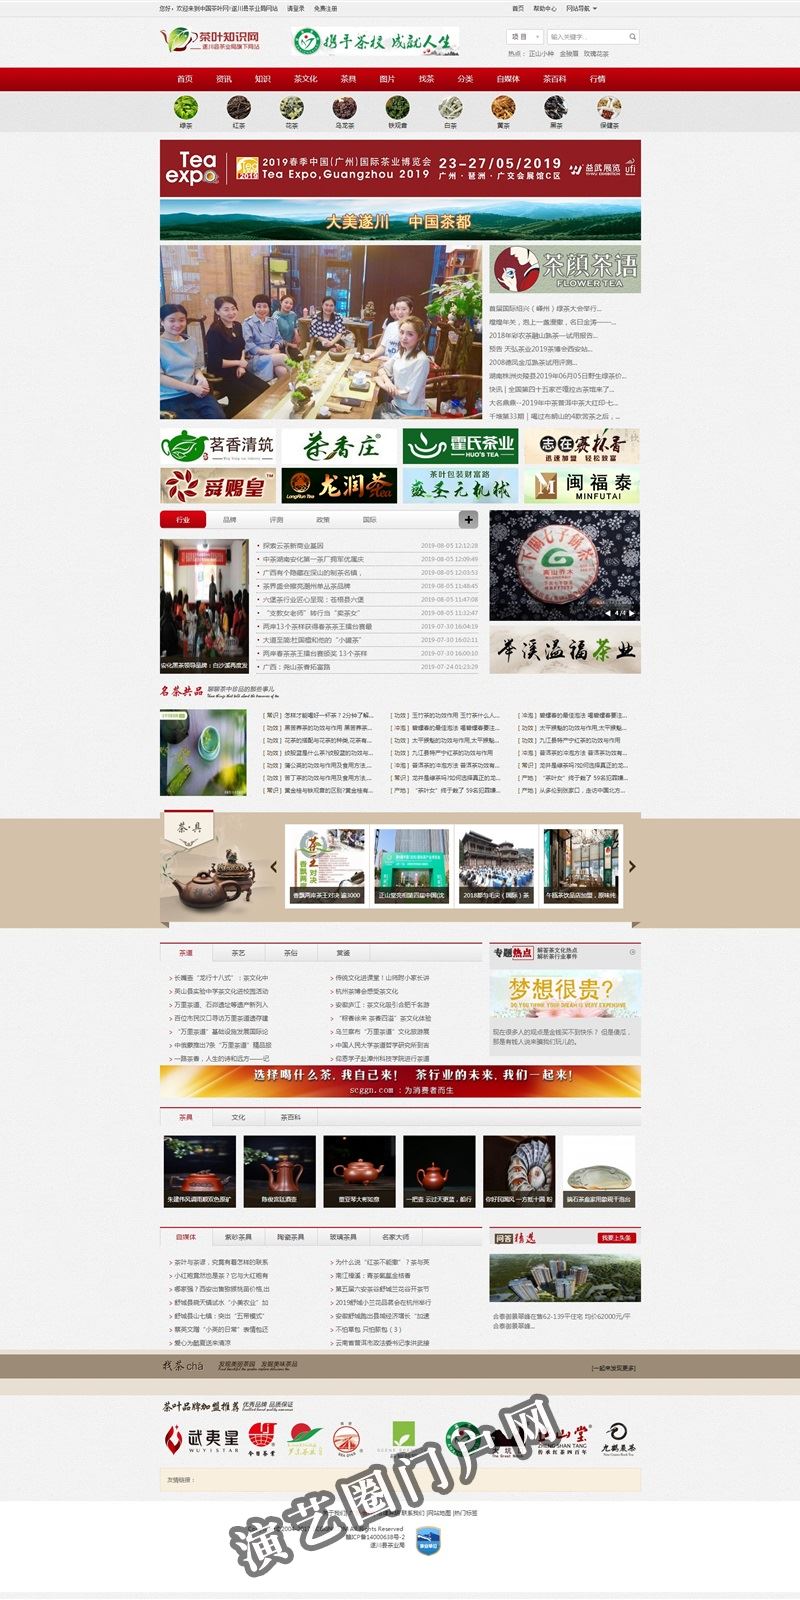 茶叶百科网-茶叶行业权威网站,绿茶,白茶,红茶,乌龙茶,新闻,批发,价格,茶具截图